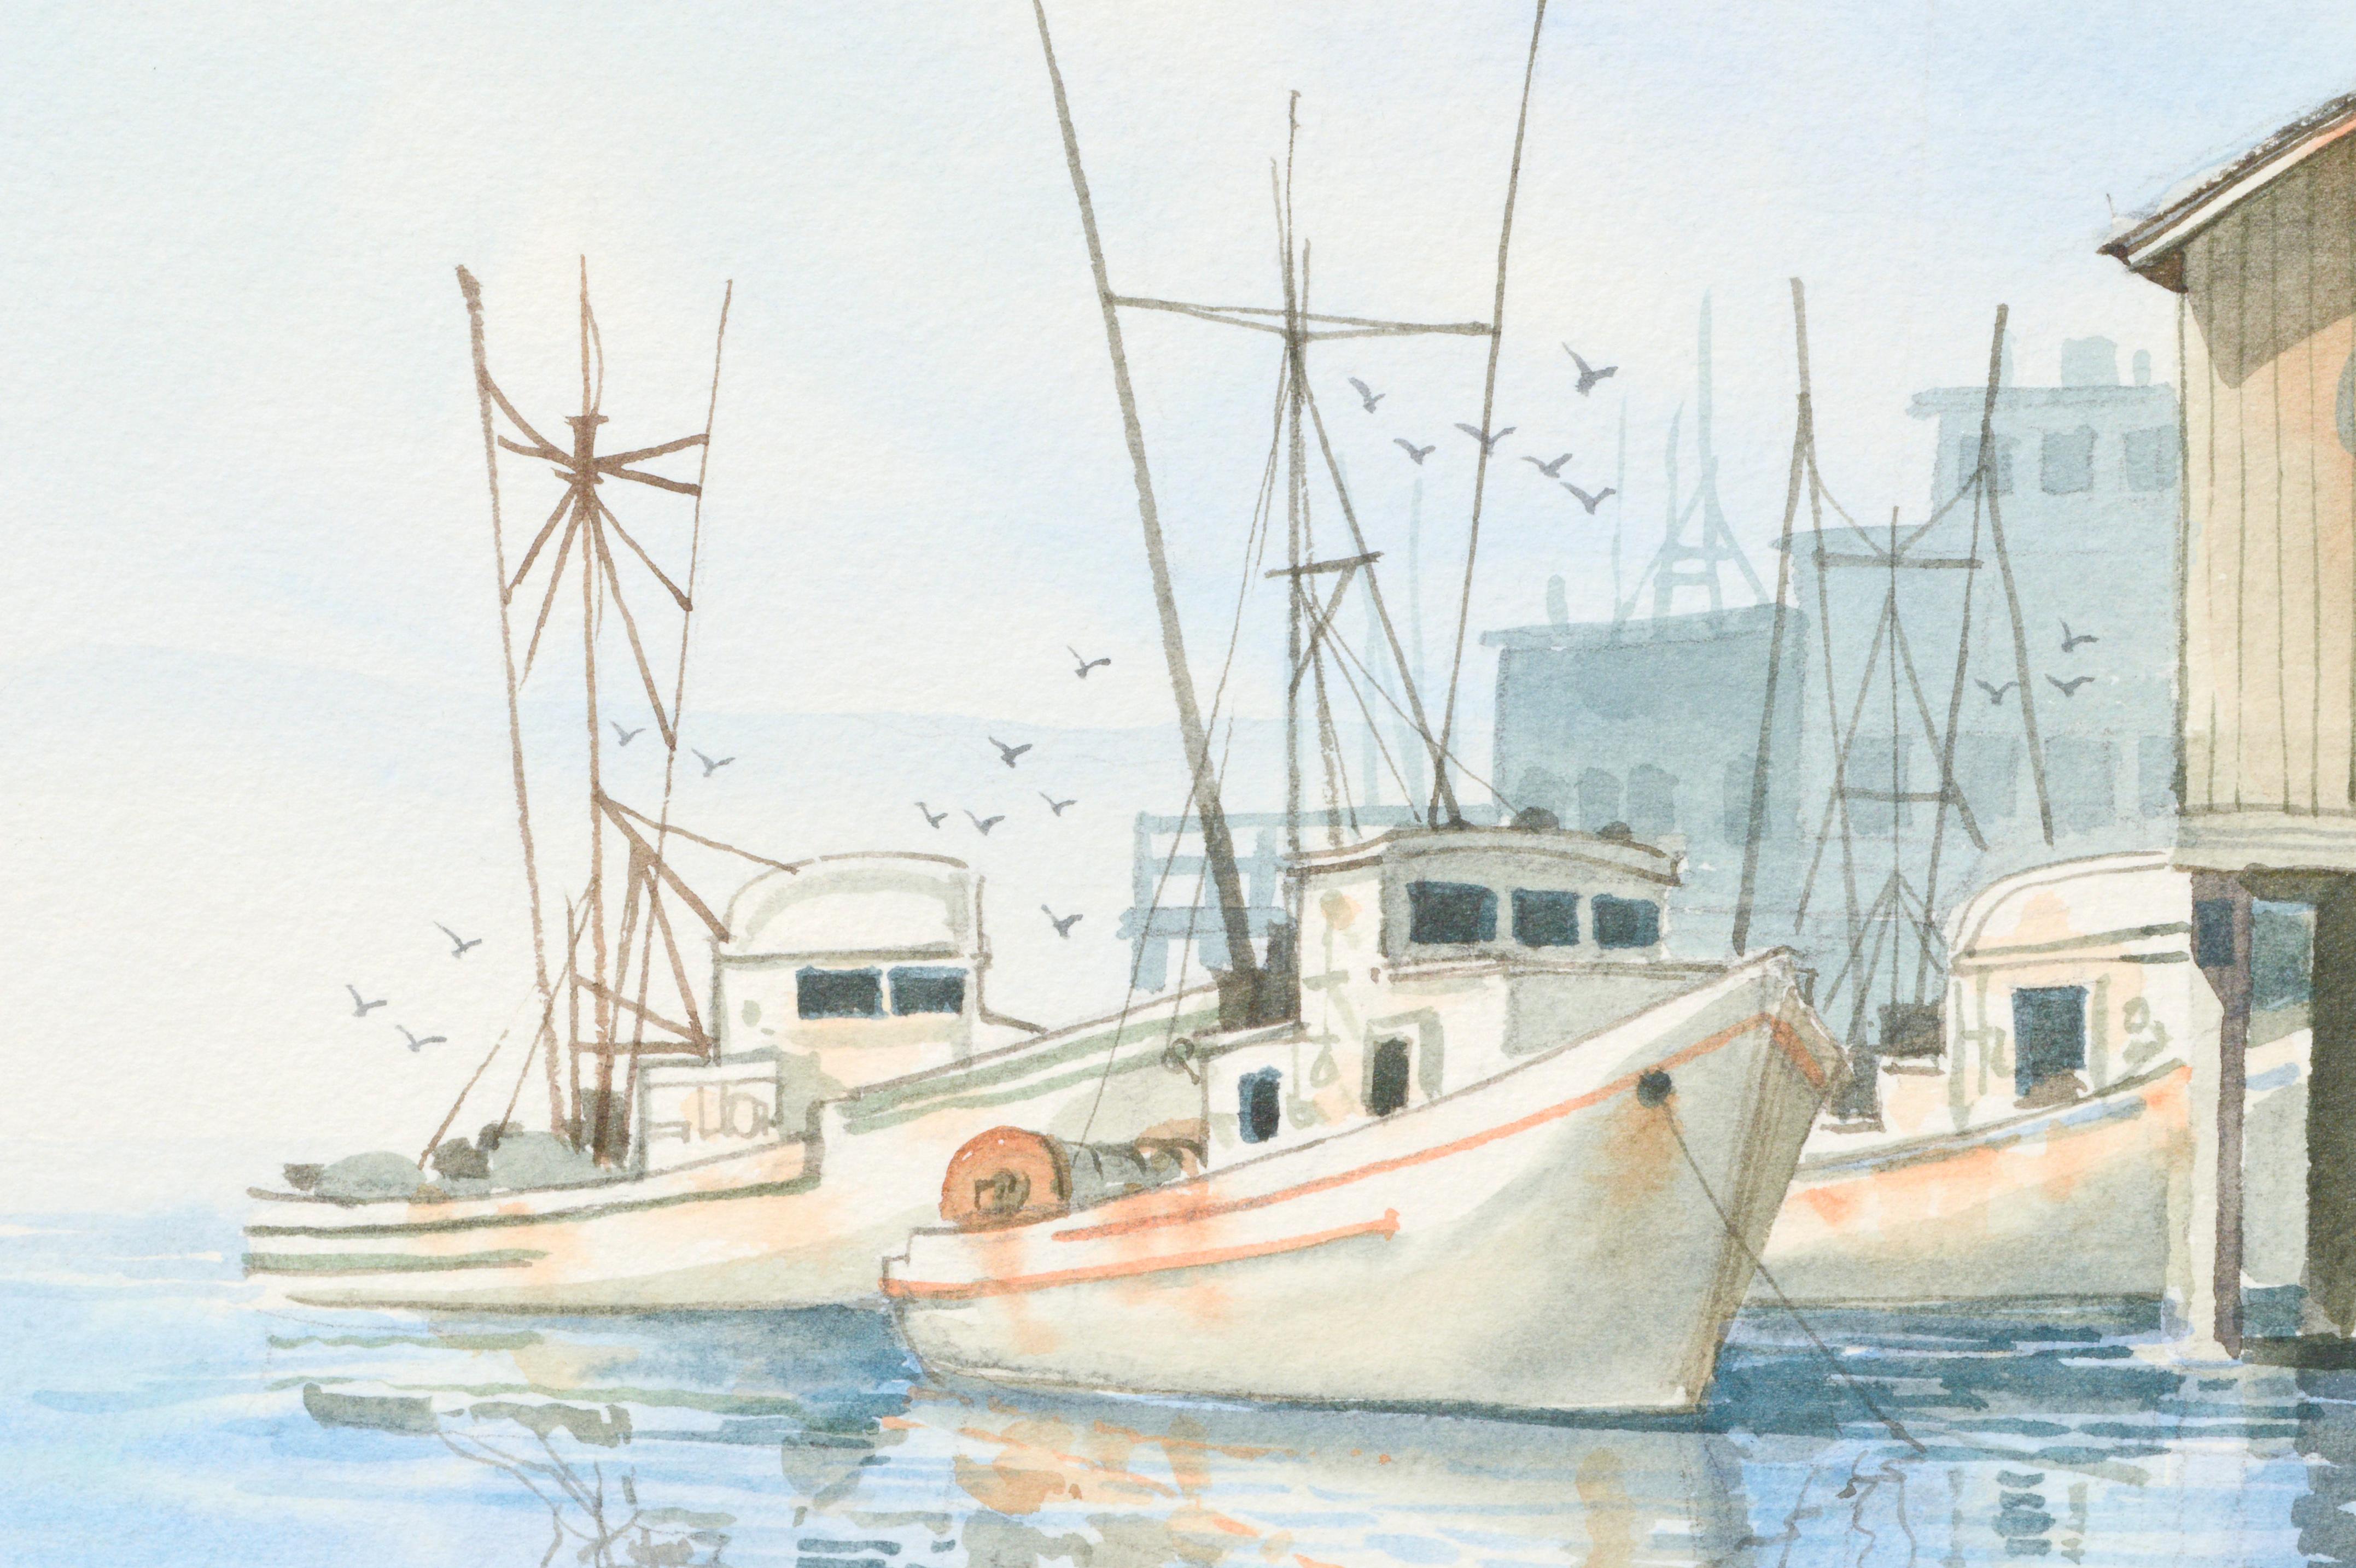 Bateaux de pêche dans le port avec le marché aux poissons de Monterey Wharf, paysage maritime

Aquarelle très détaillée de bateaux de pêche dans le port le long d'un quai avec des cabanes colorées et un marché aux poissons, par un artiste inconnu